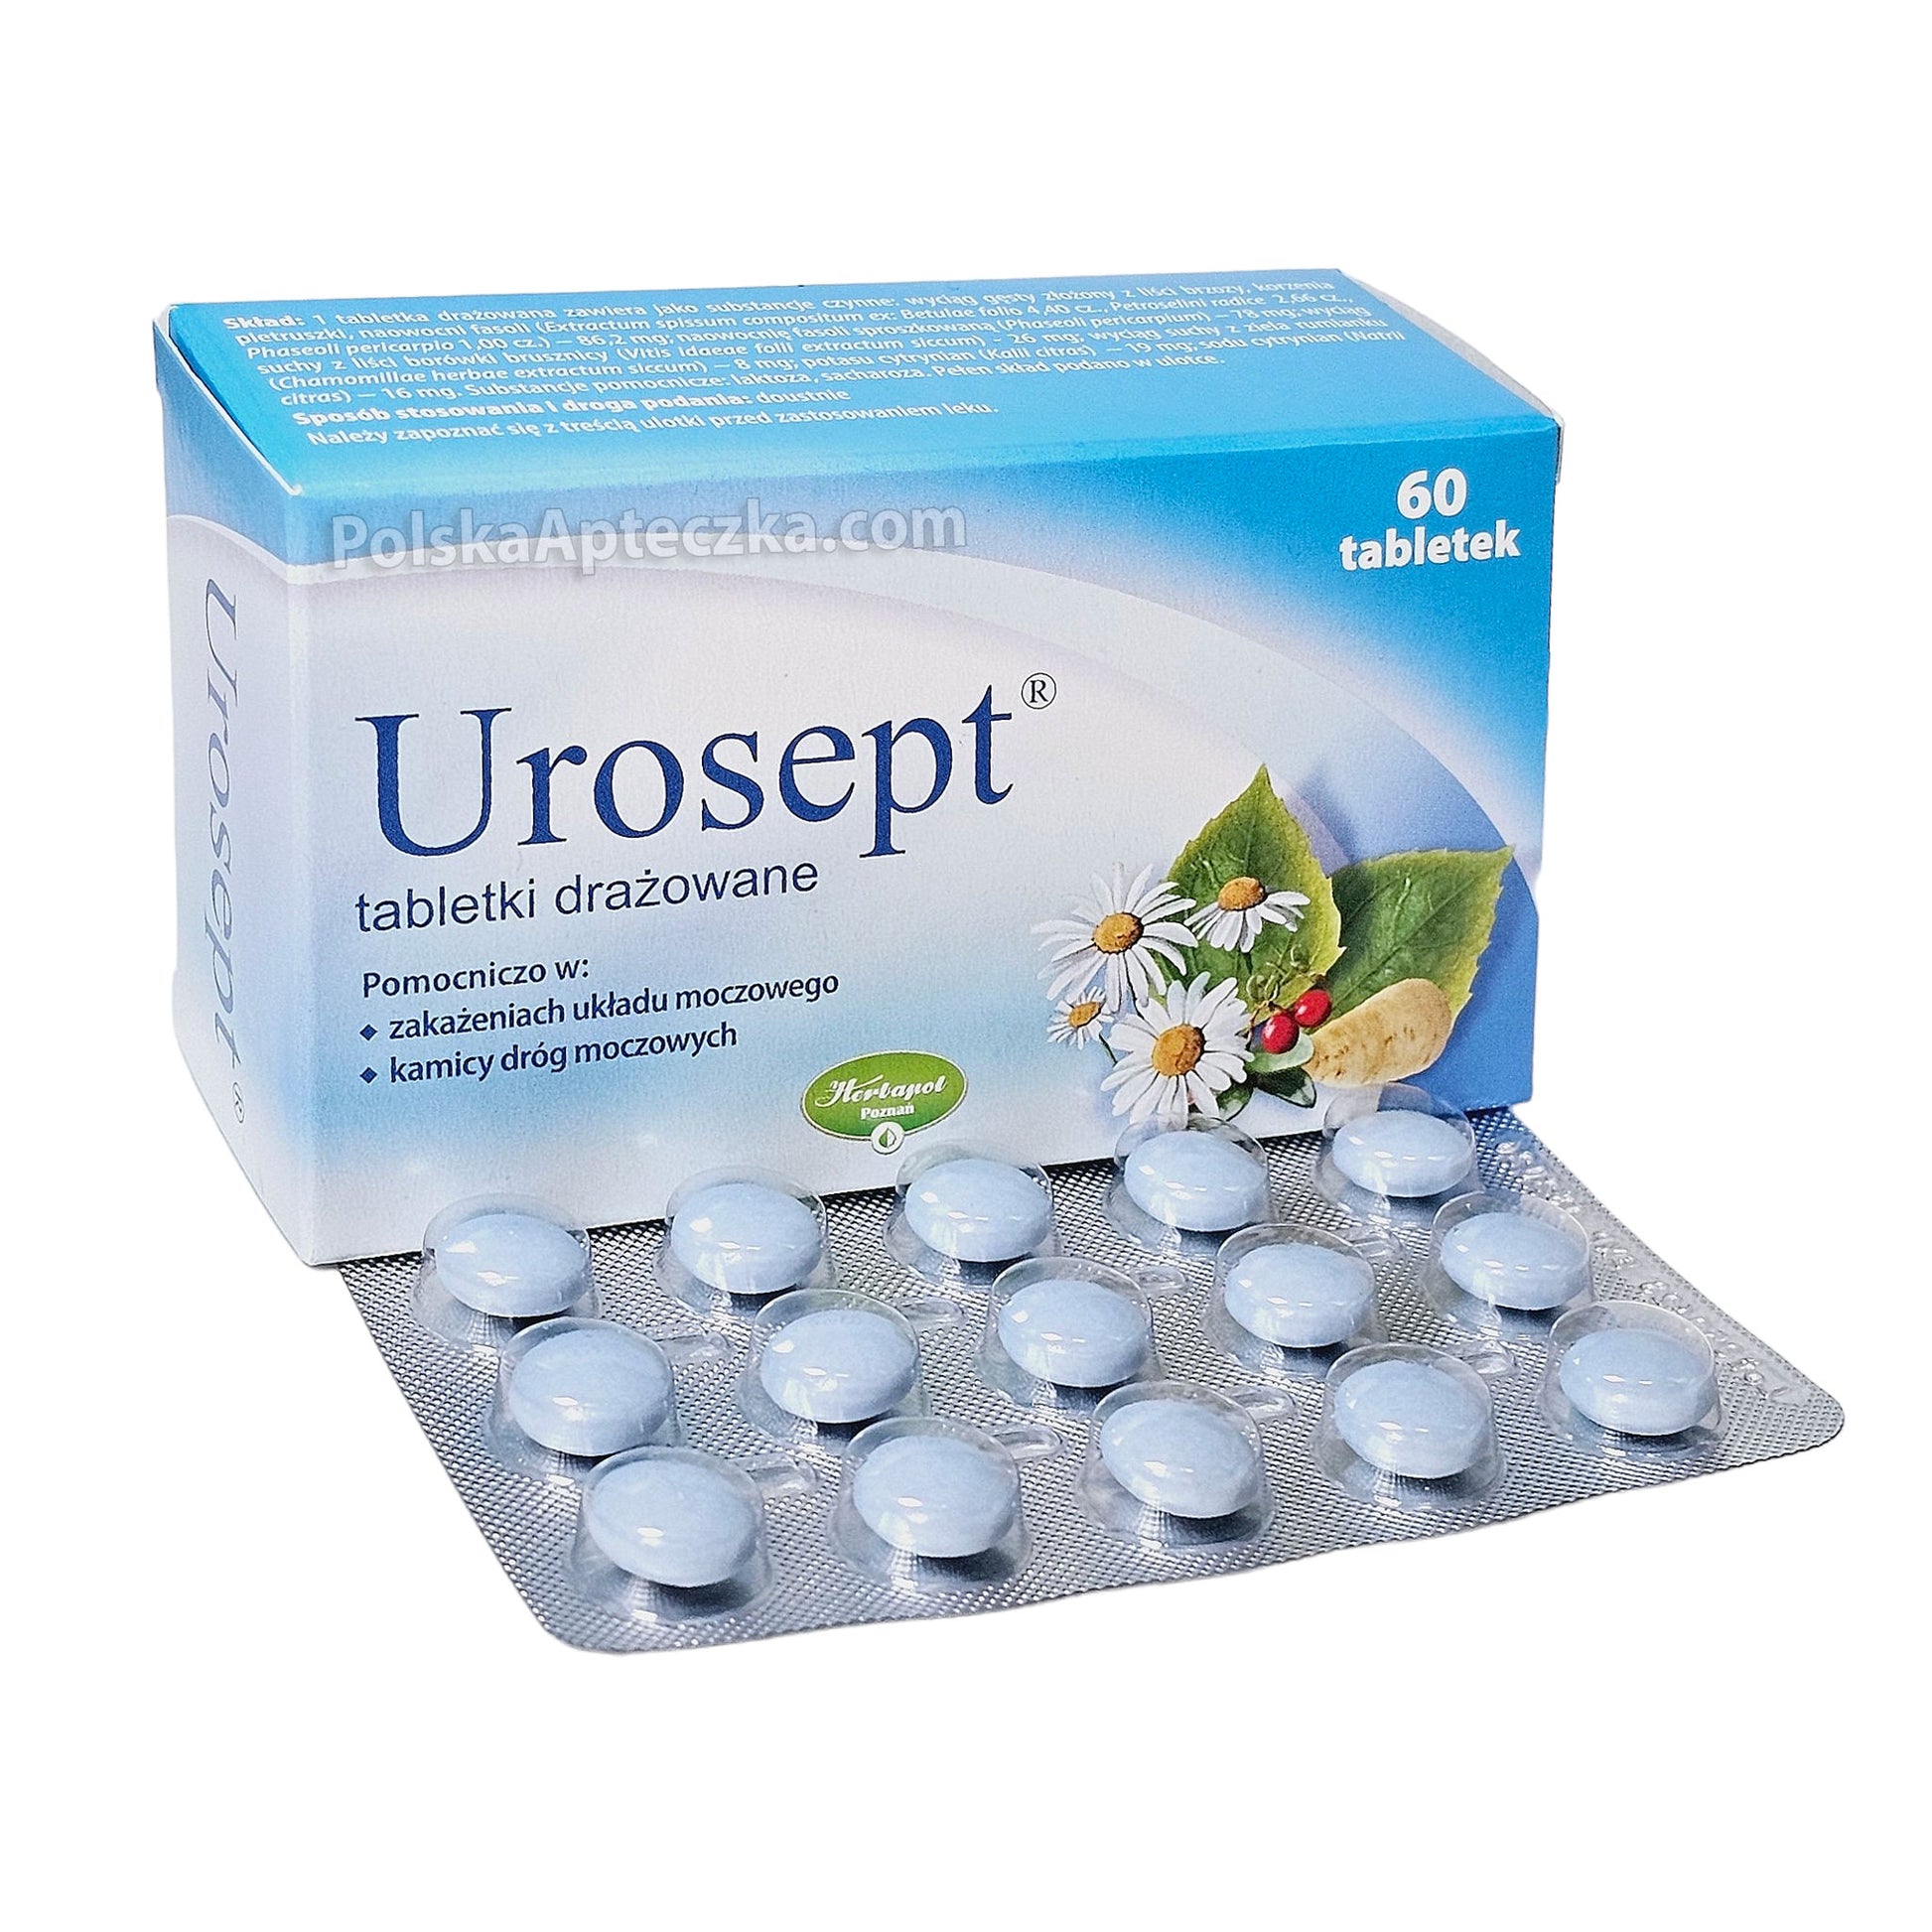 urosept tablets